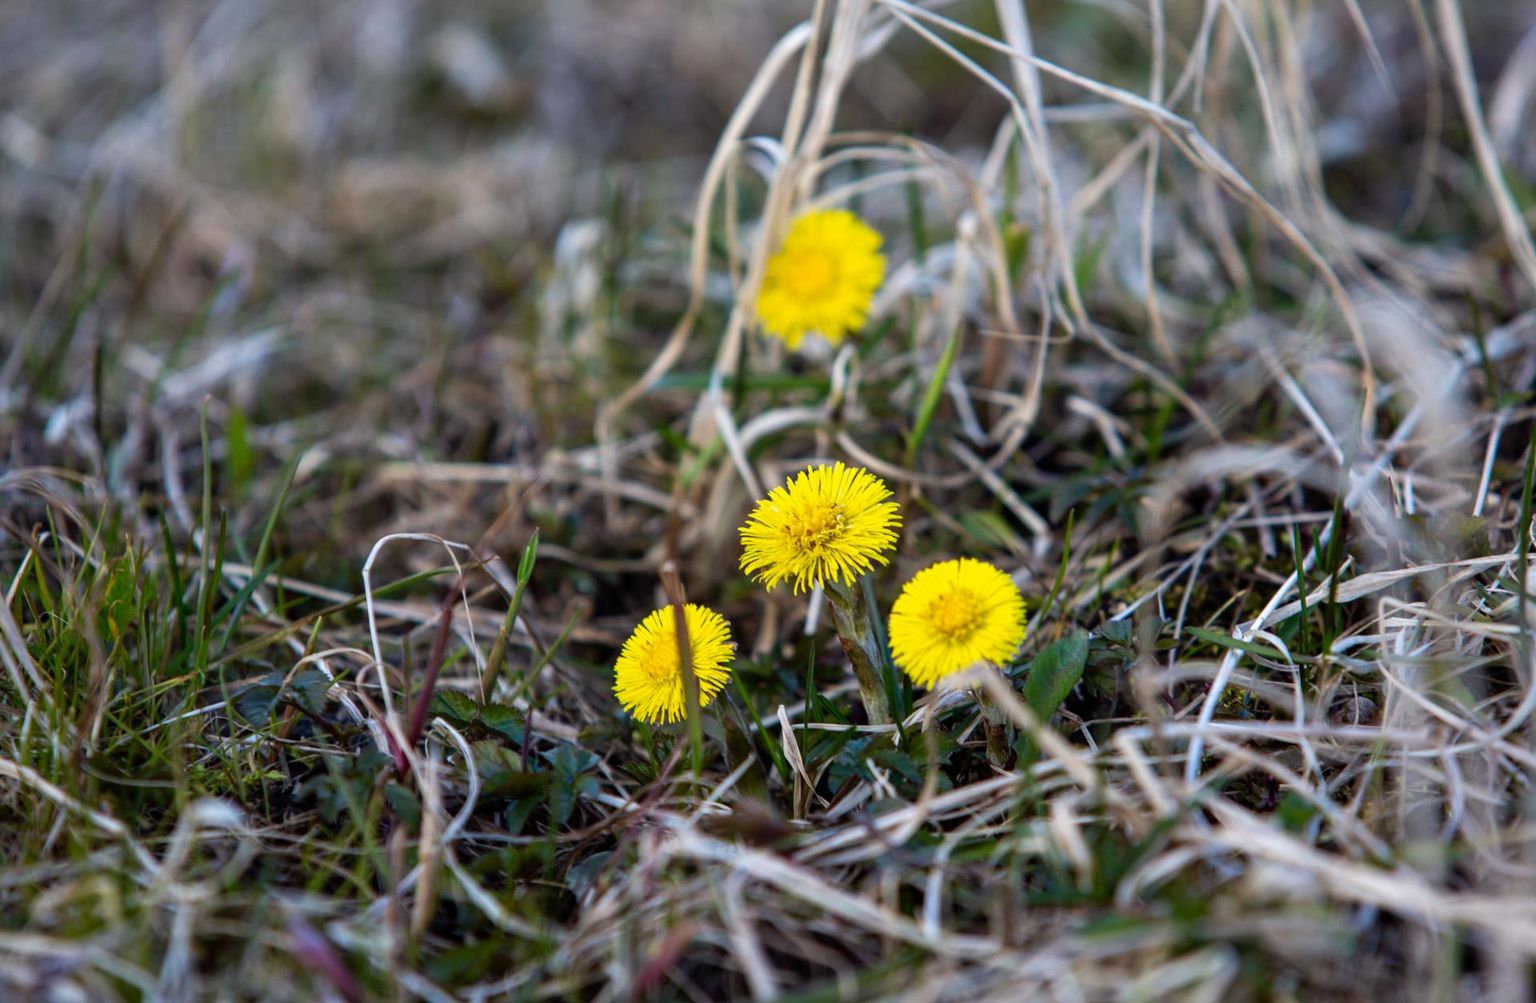 Märtsis hakkas loodus tasapisi õide puhkema, ehkki lilleilu sai näha talvelgi. Pilt on tehtud 20. märtsil.